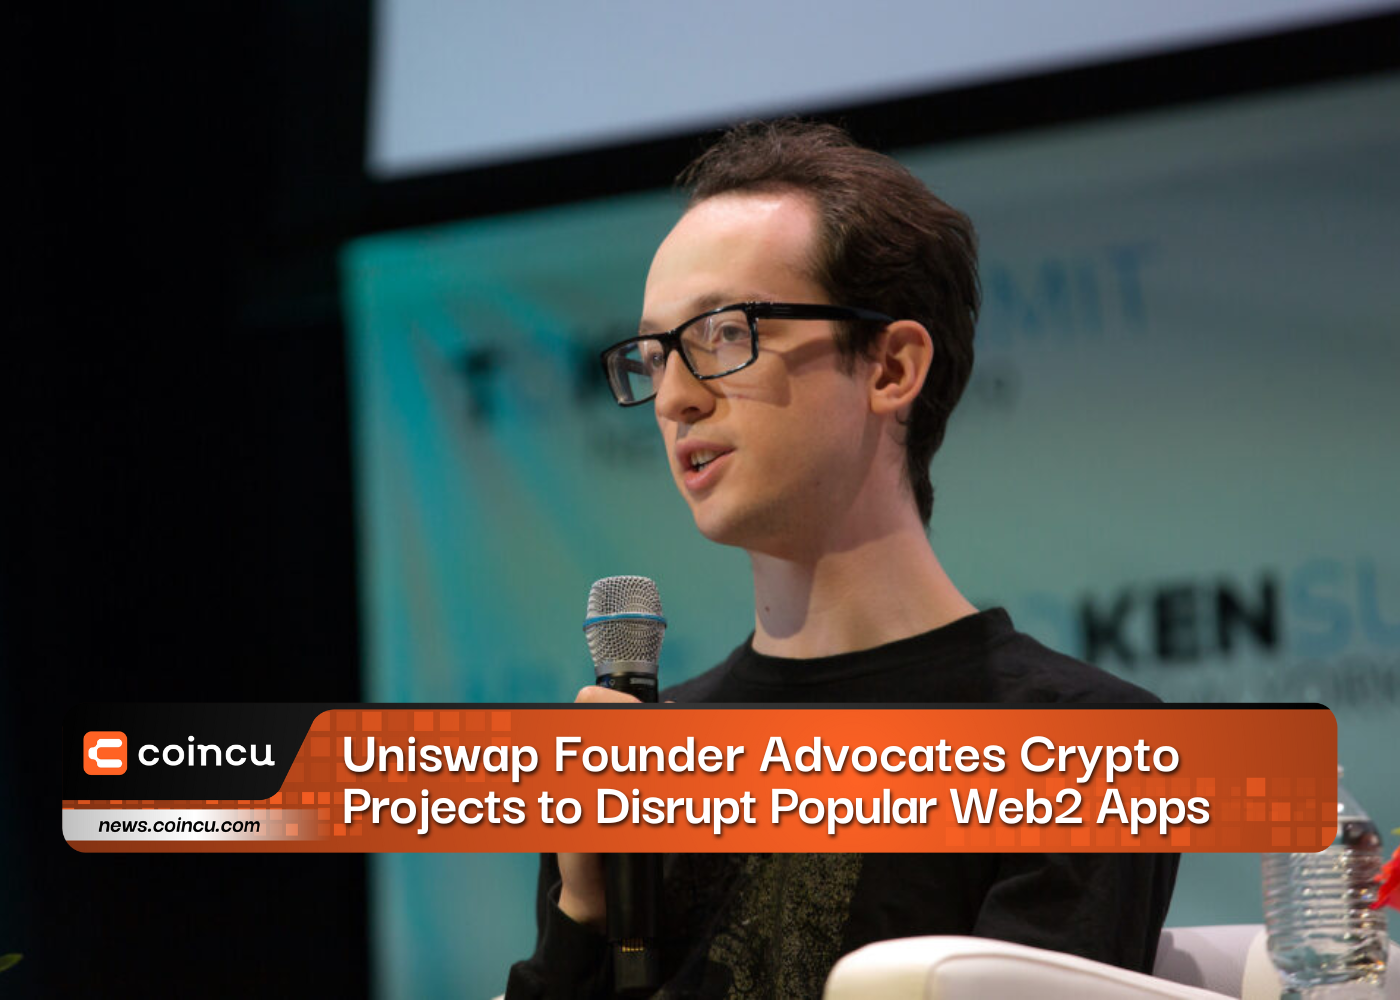 El fundador de Uniswap aboga por las criptomonedas